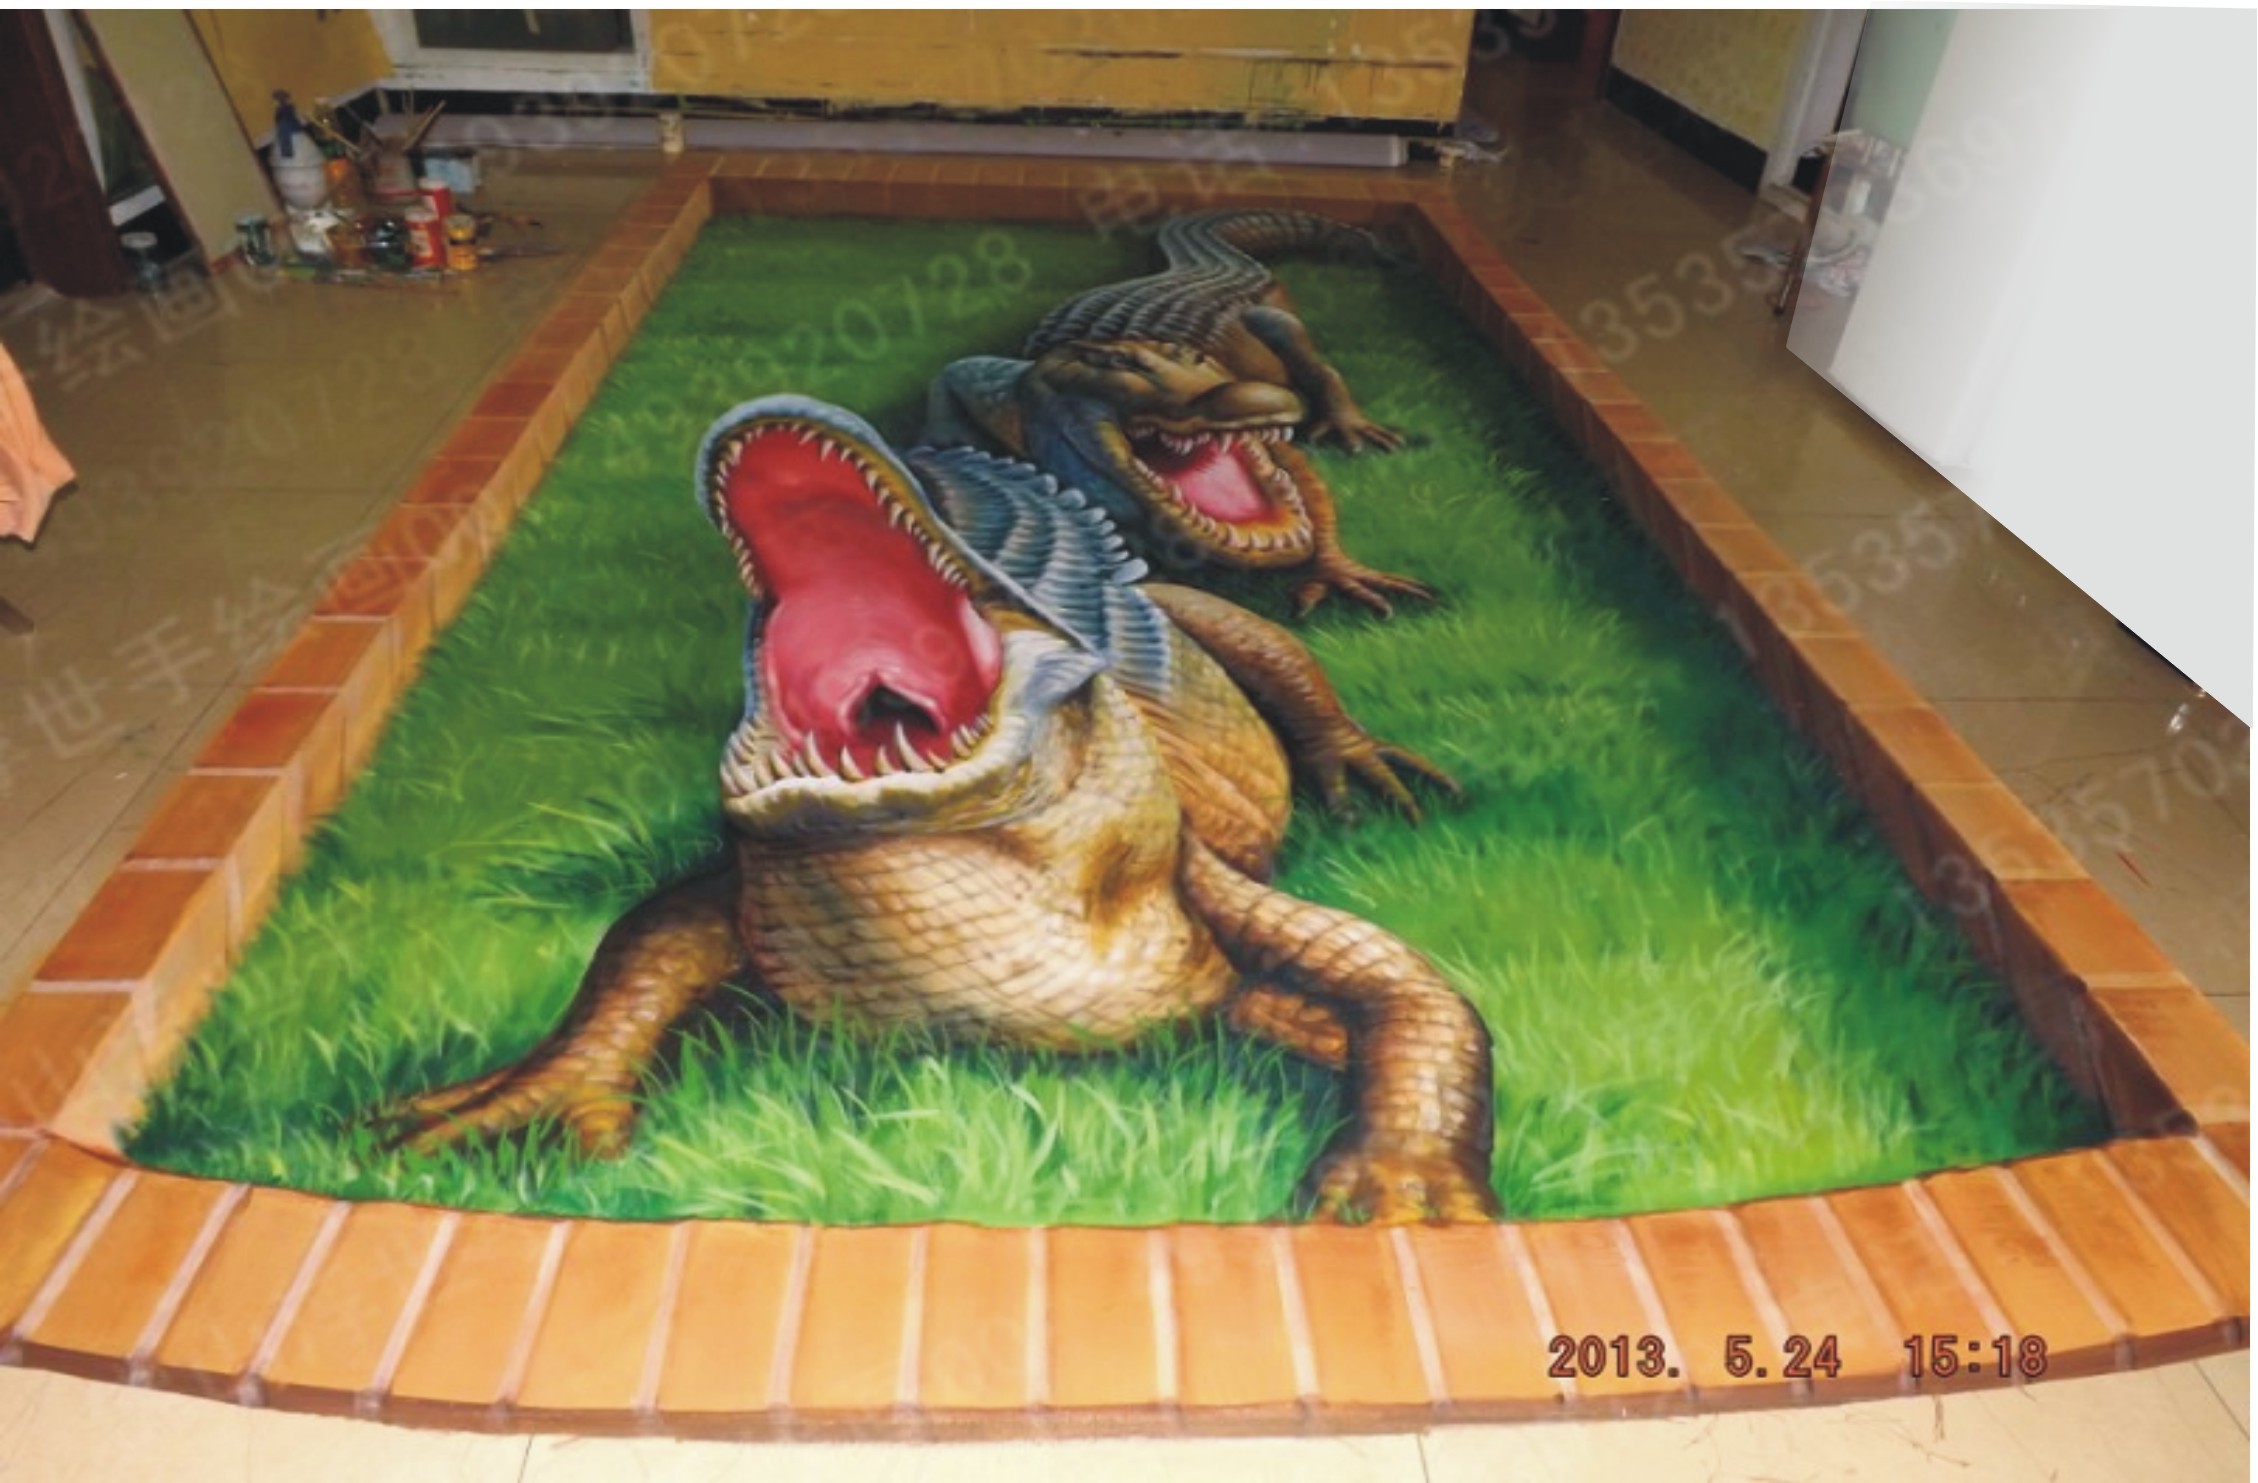 3d地画鳄鱼池,绘制过程|其他|墙绘/立体画|浮世手绘画工作室 原创